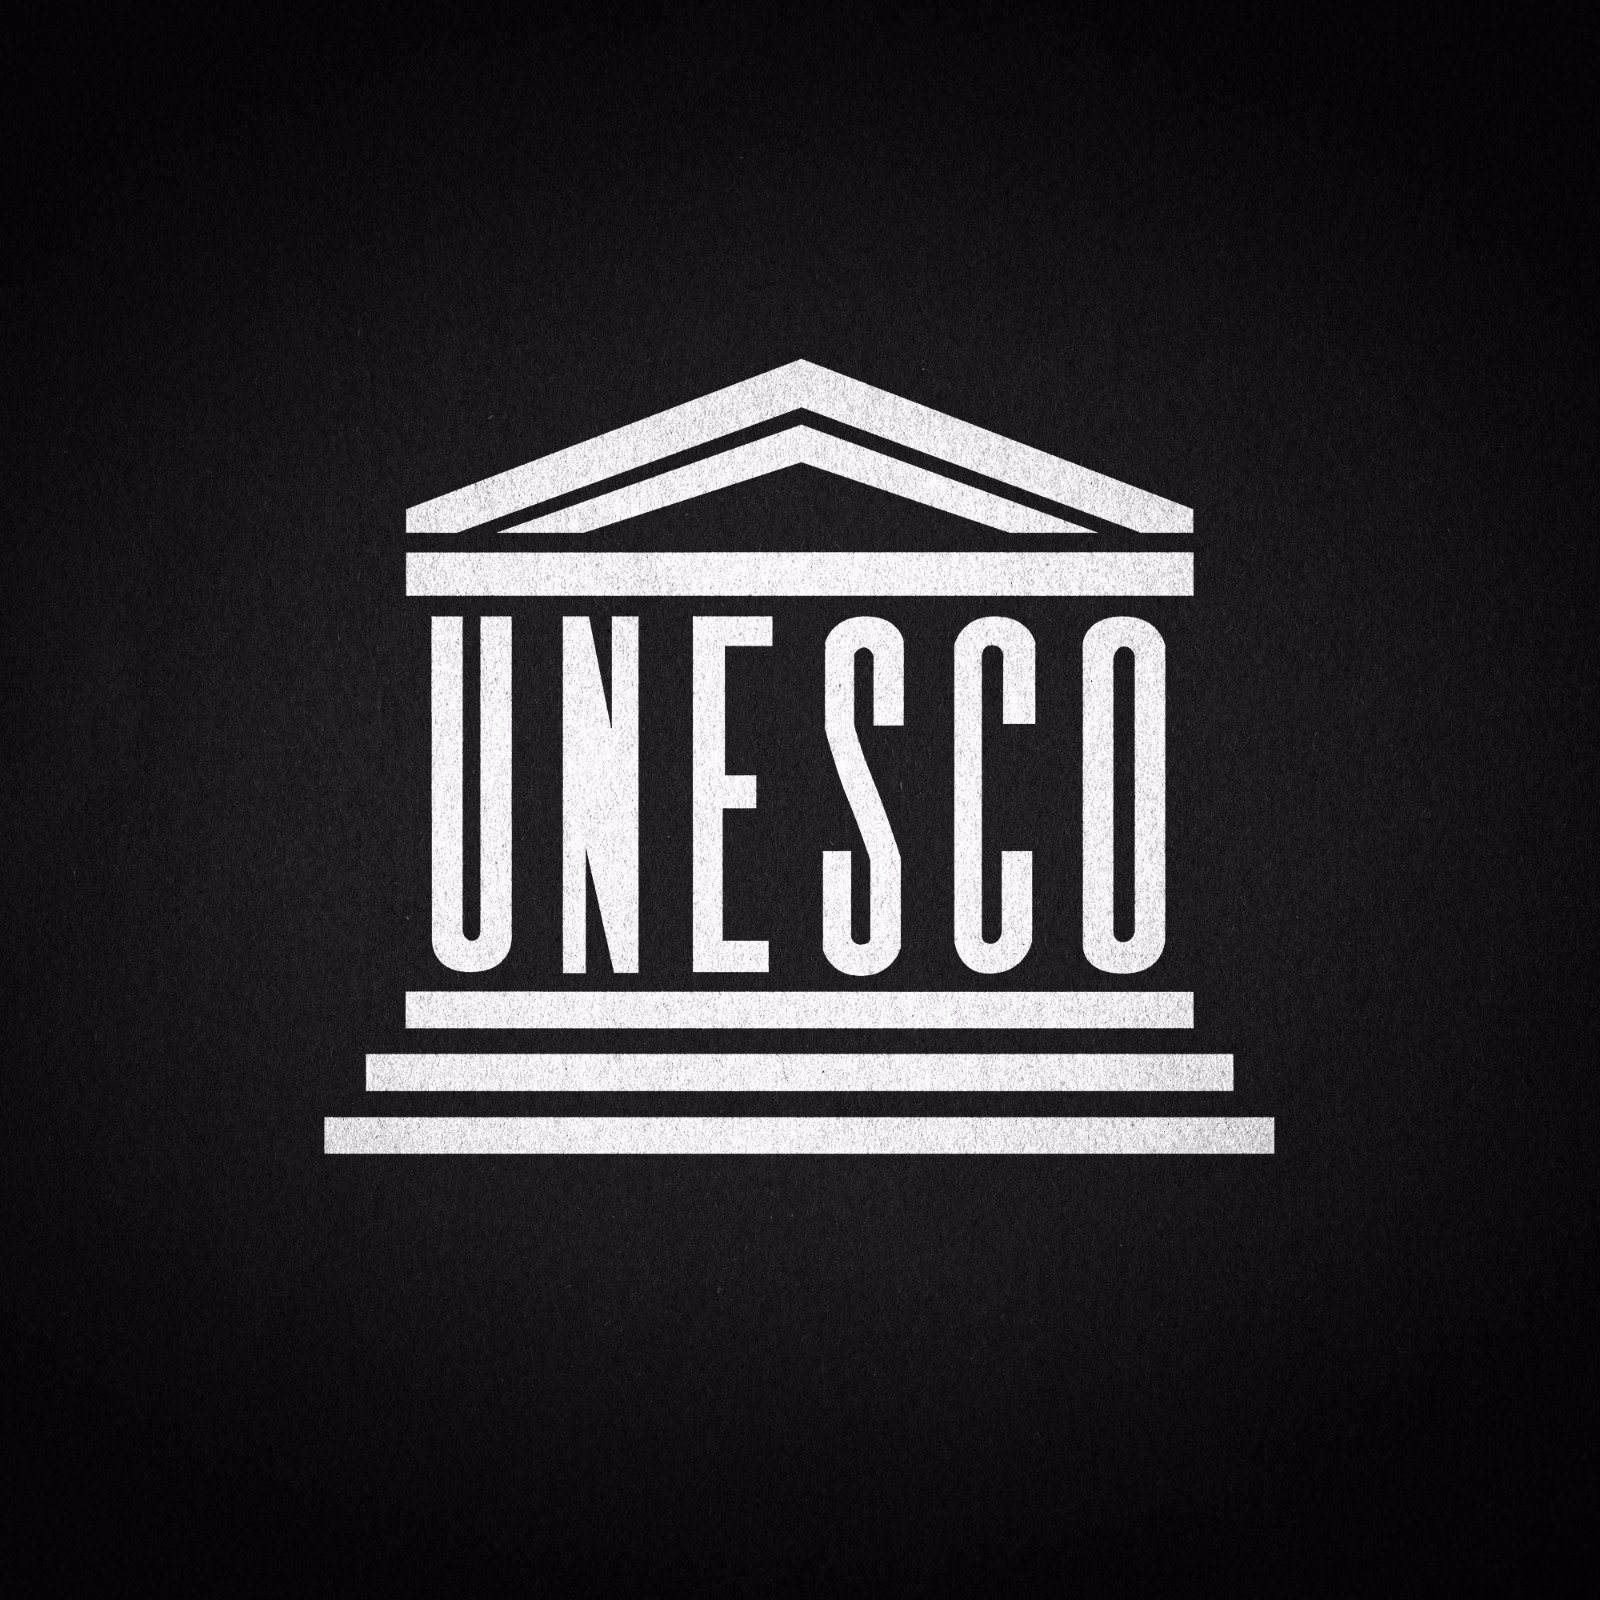 UNESCO UK